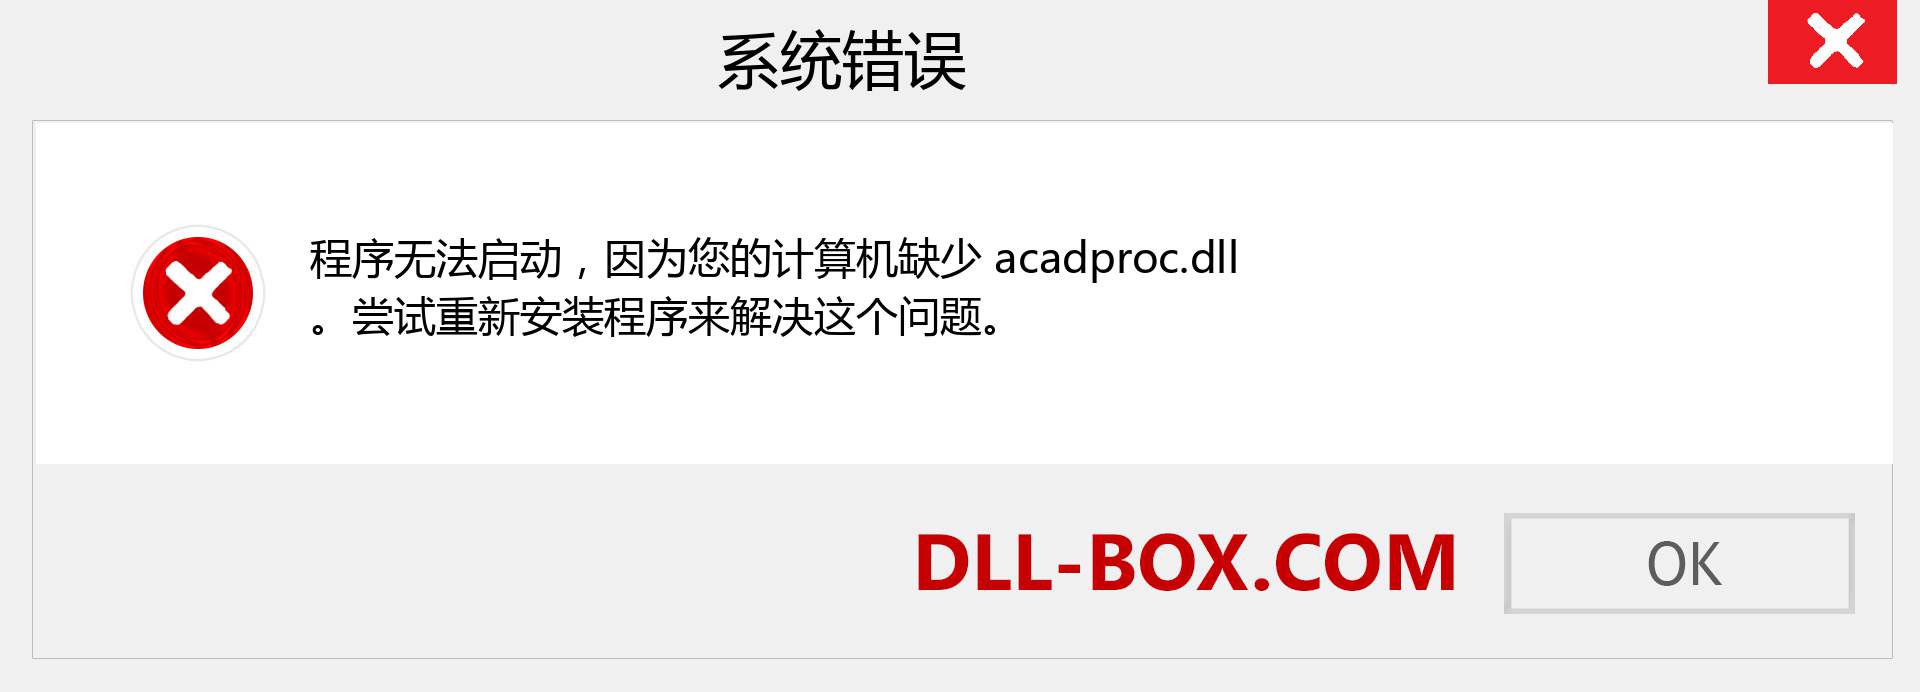 acadproc.dll 文件丢失？。 适用于 Windows 7、8、10 的下载 - 修复 Windows、照片、图像上的 acadproc dll 丢失错误